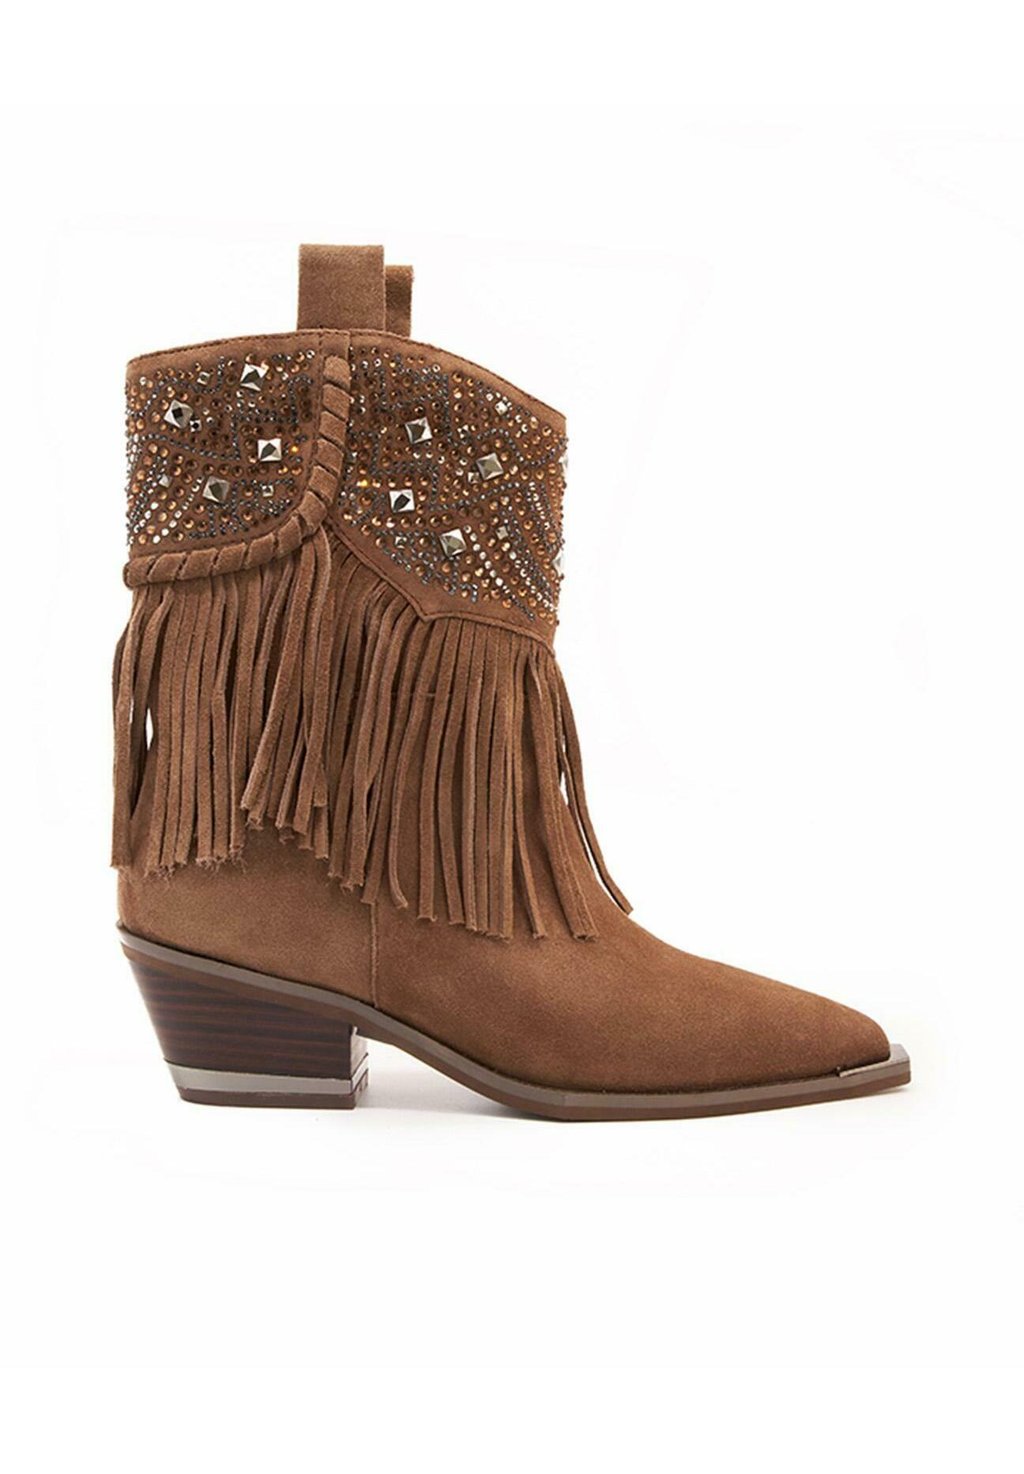 Техасские/байкерские ботинки Alma en Pena, коричневые техасские байкерские ботинки alma en pena песочный